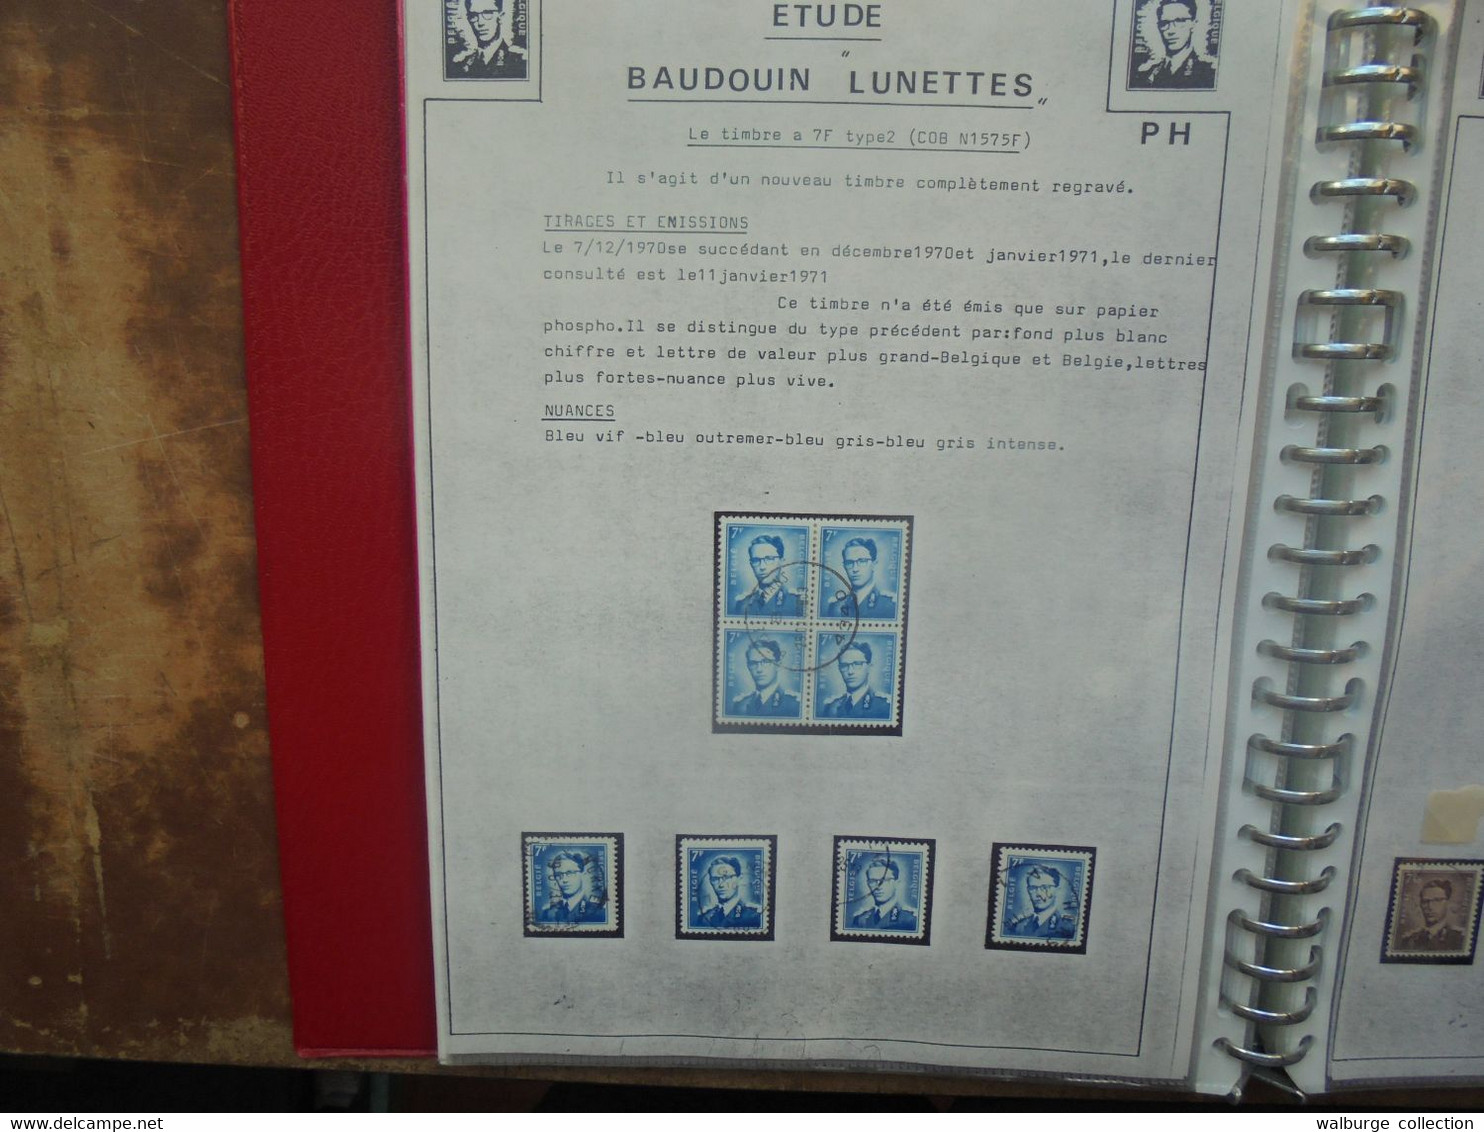 BELGIQUE BELLE ETUDE Baudouin 1er+Velghe+Lion Héraldique Nuances de papiers-Courriers (RH.87) 1 KILO 200